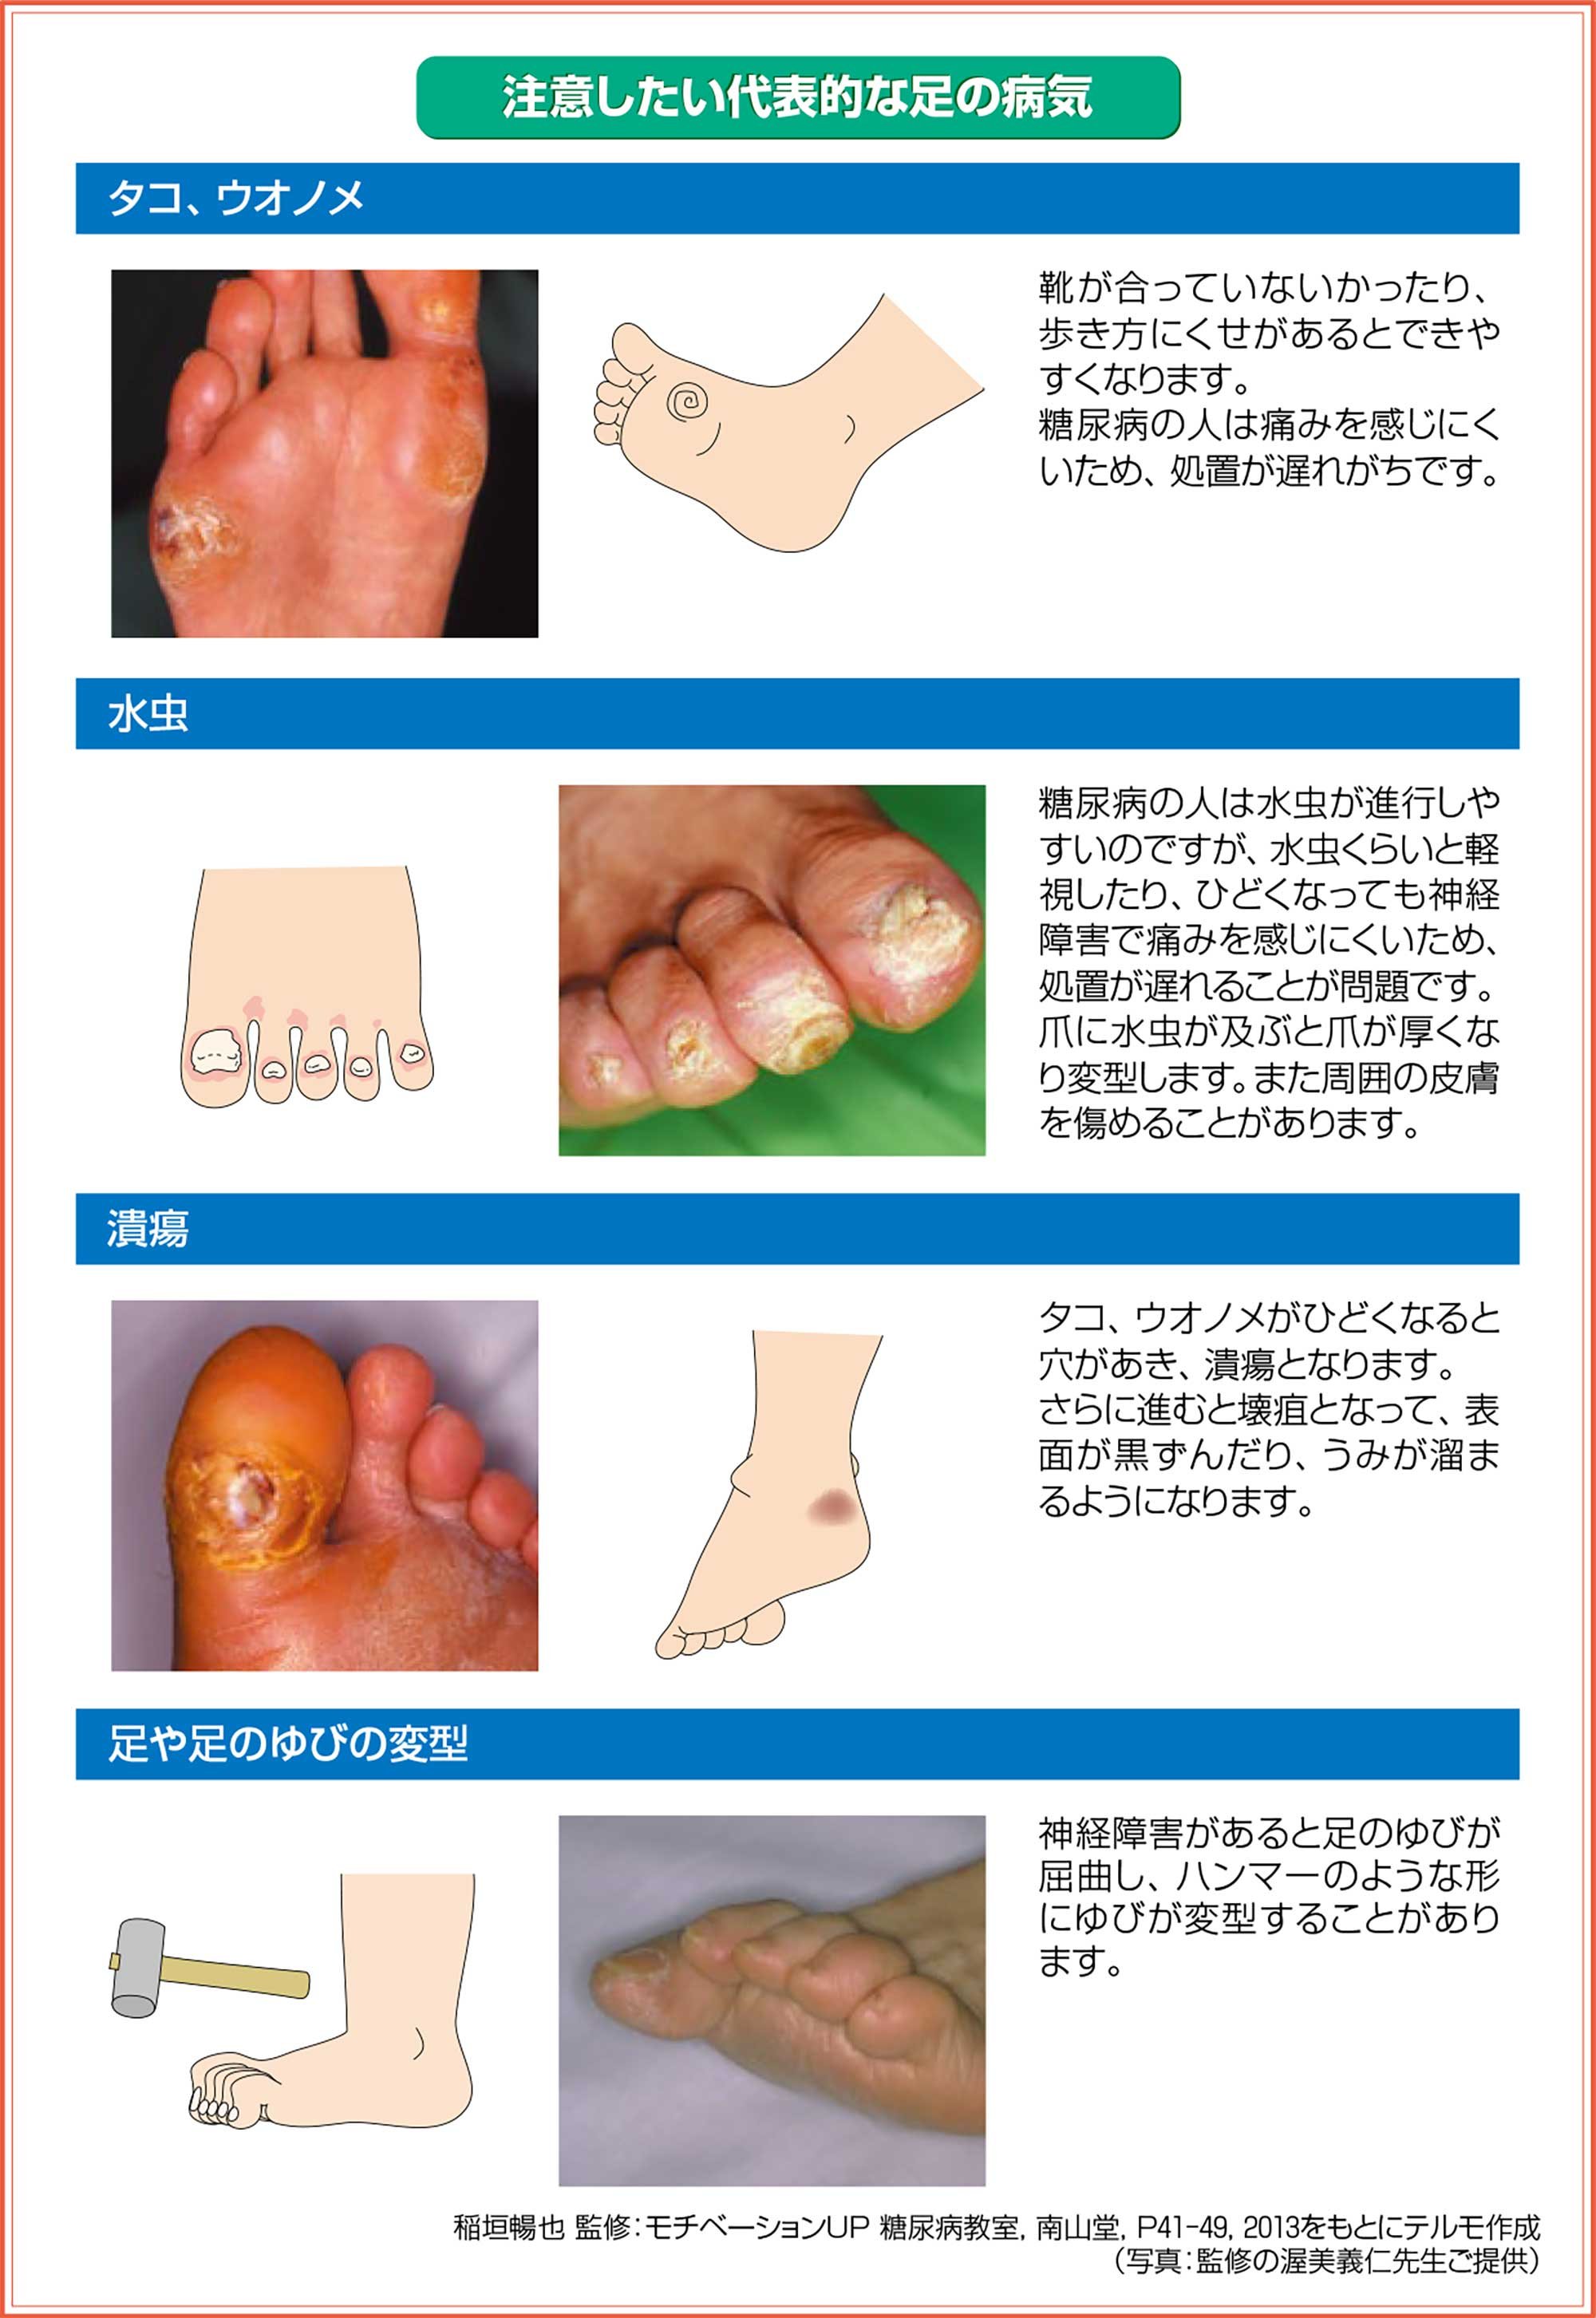 注意したい足の病気は、①タコ、ウオノメ、イボ　②水虫　③潰瘍　④足や足の指の変形　です。